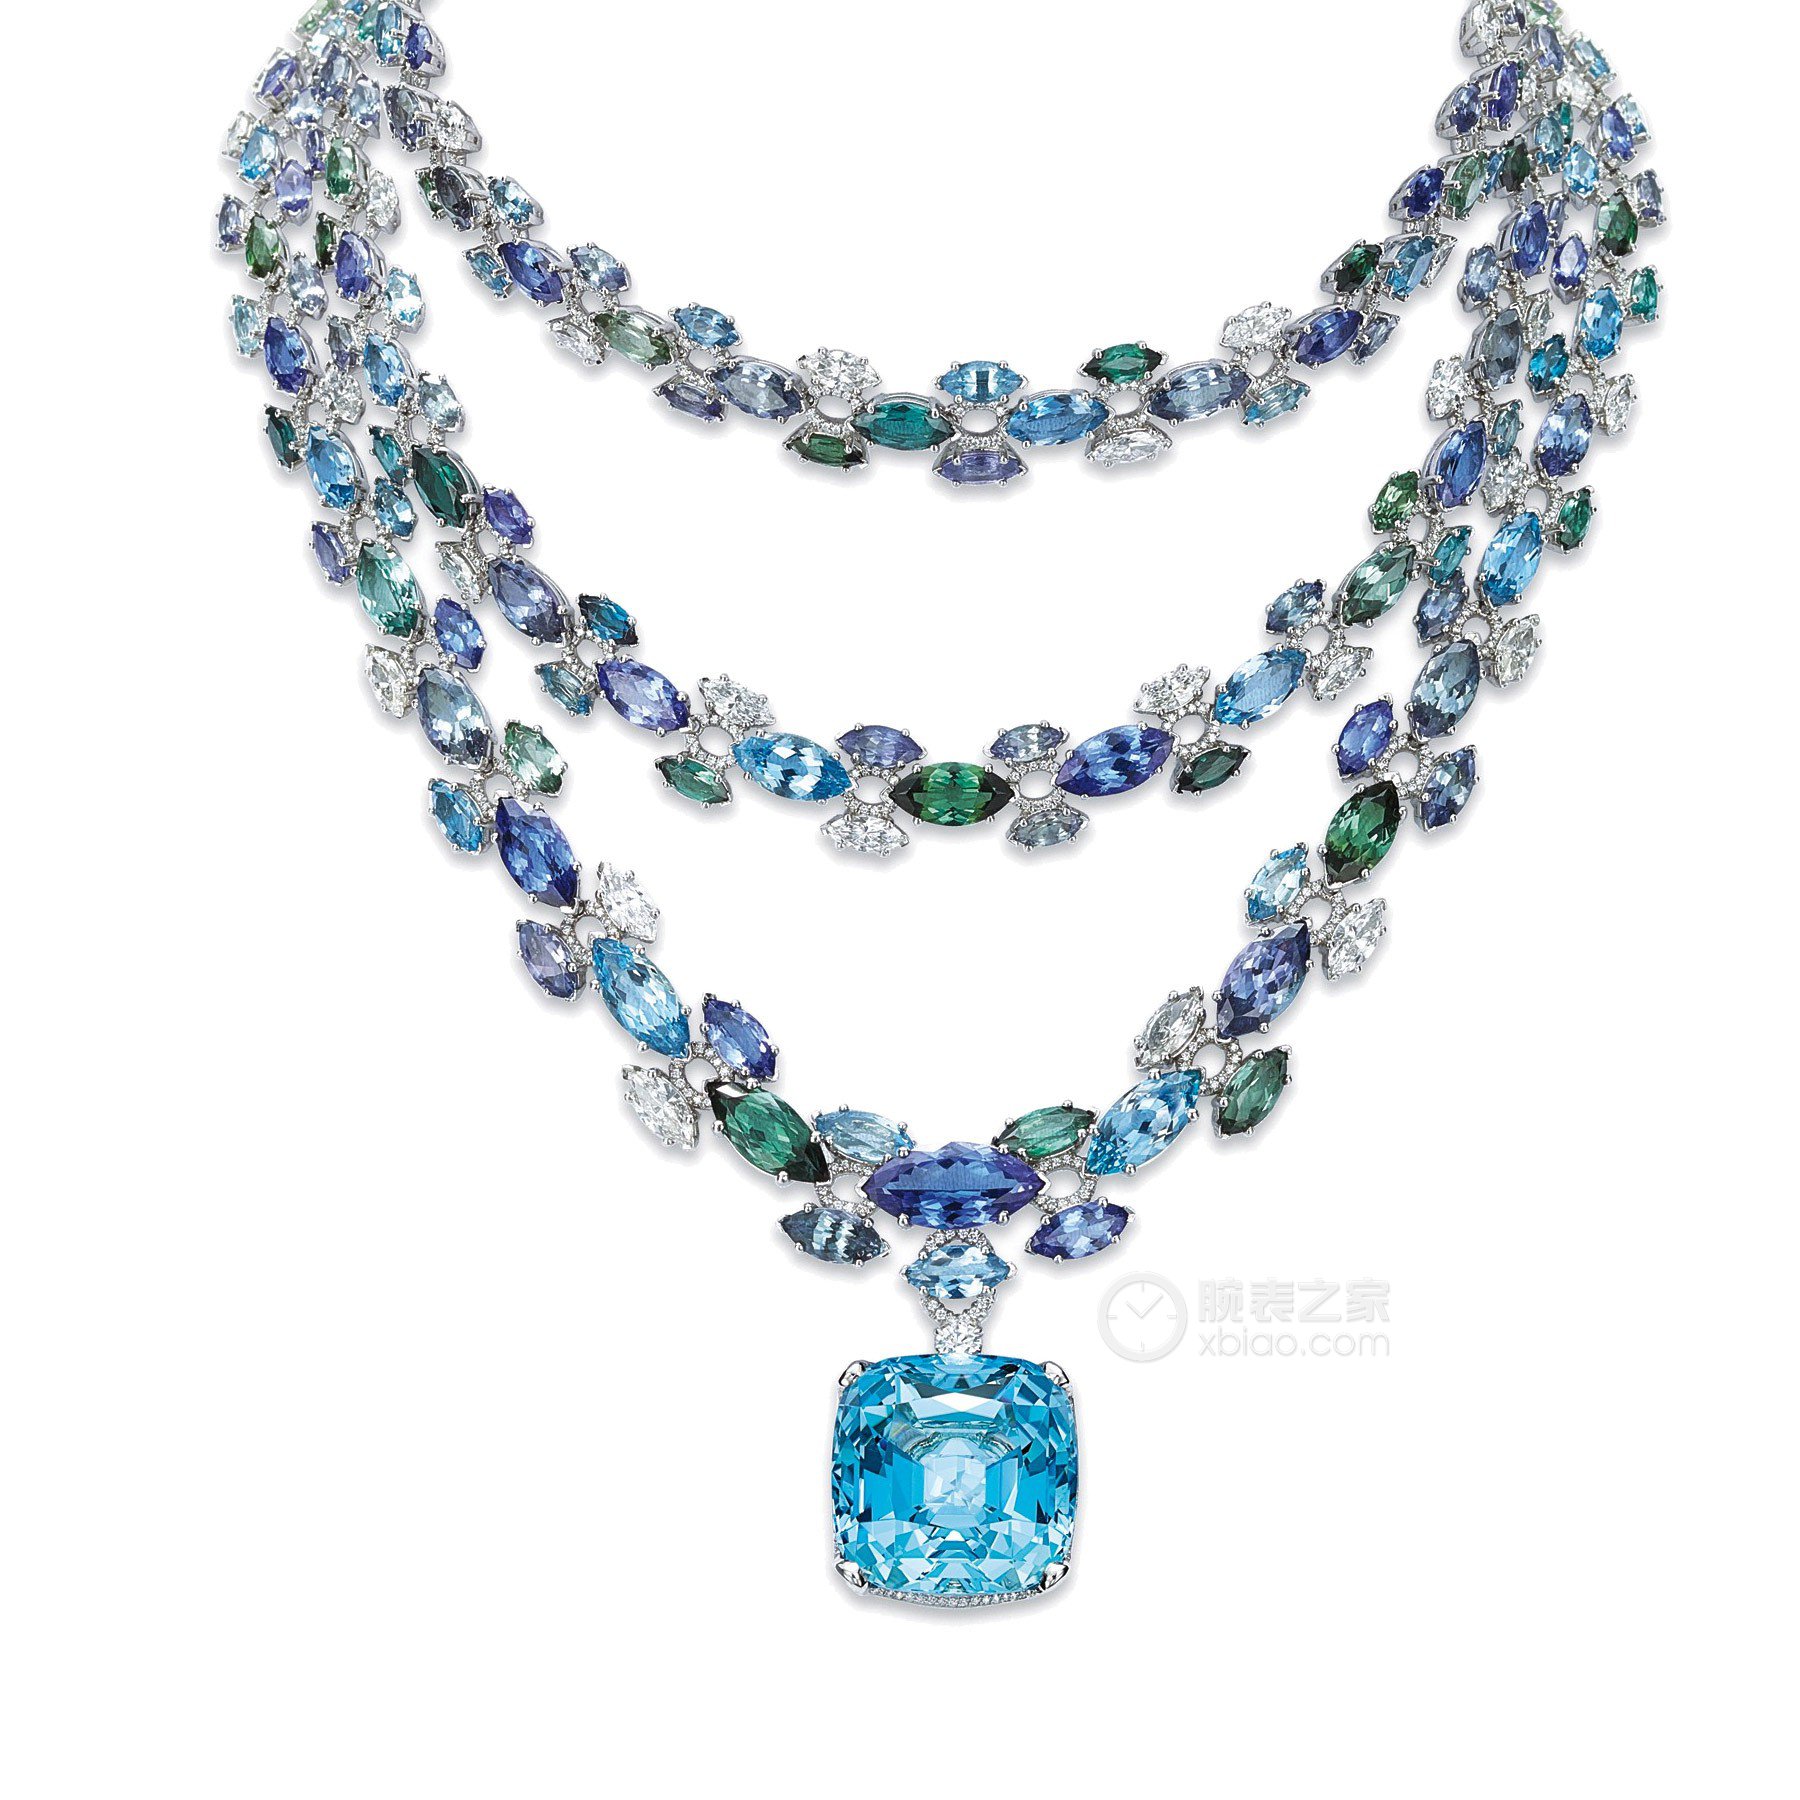 高清图|蒂芙尼珍珠及钻石项链项链图片6|腕表之家-珠宝